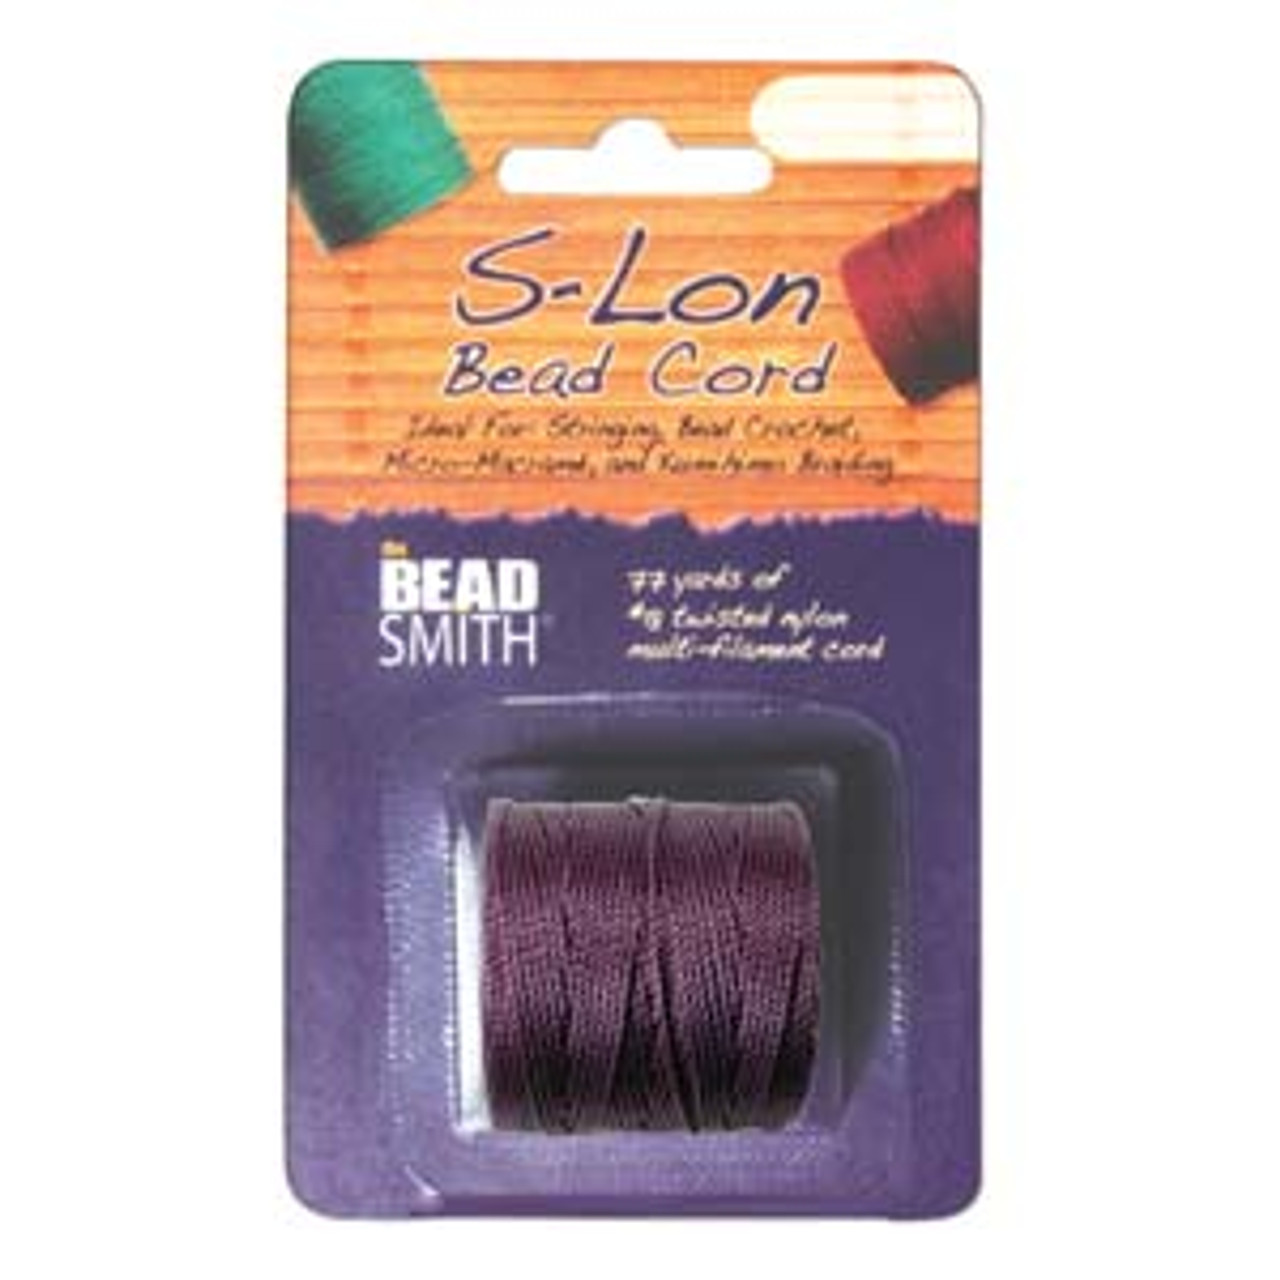 S-LON BEAD CORD TEX 210 1/CD Medium PURPLE-Approx 77 Yards